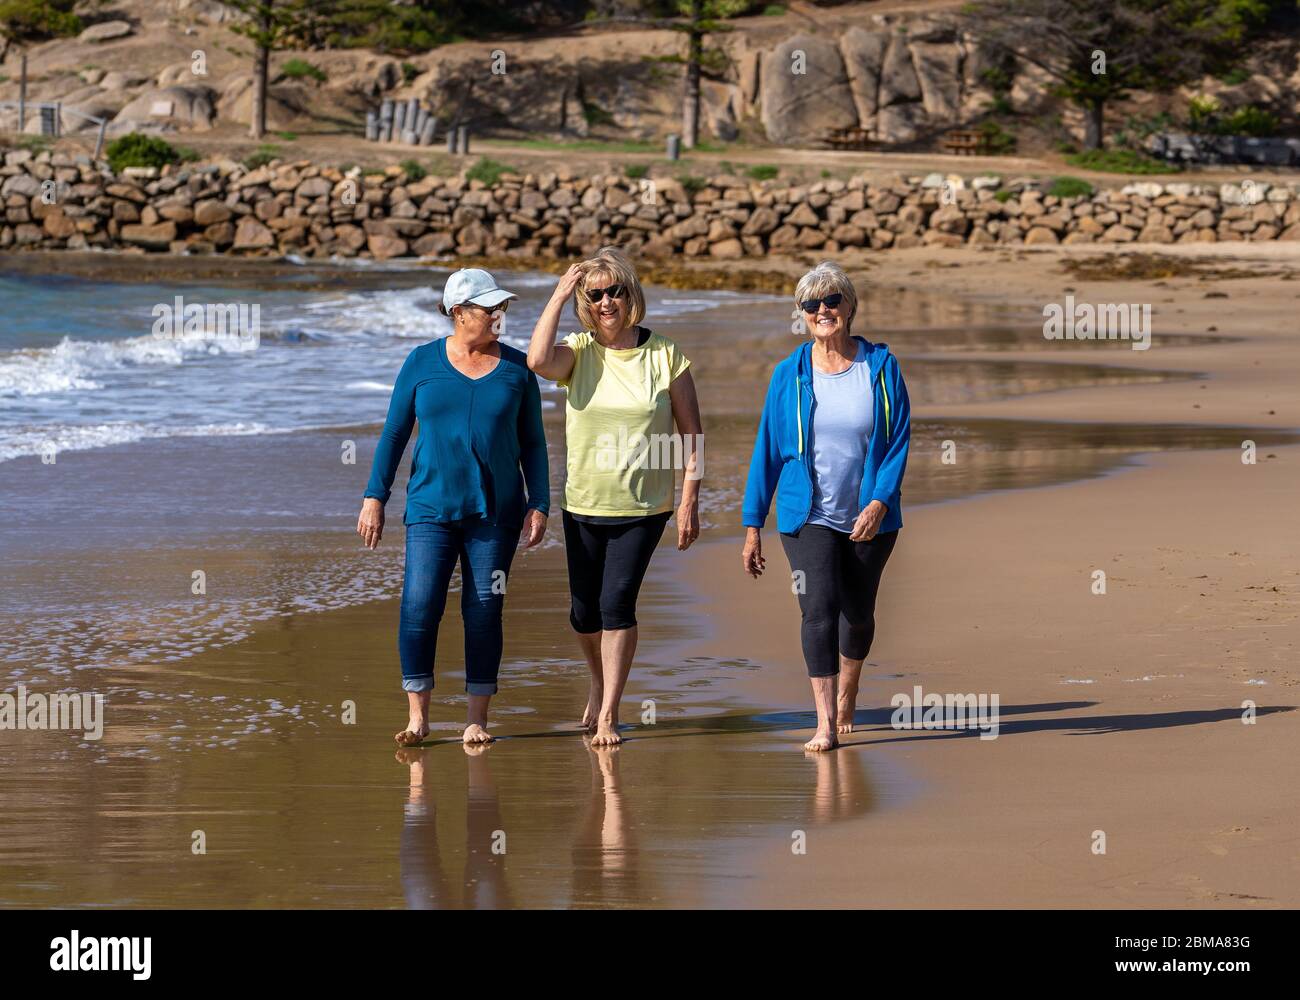 Schöne Gruppe von drei aktiven älteren Frau auf ihren 60ern zu Fuß, Sport und Spaß am Strand. Reife Frauen lachen genießen Spaziergang auf Vacat Stockfoto